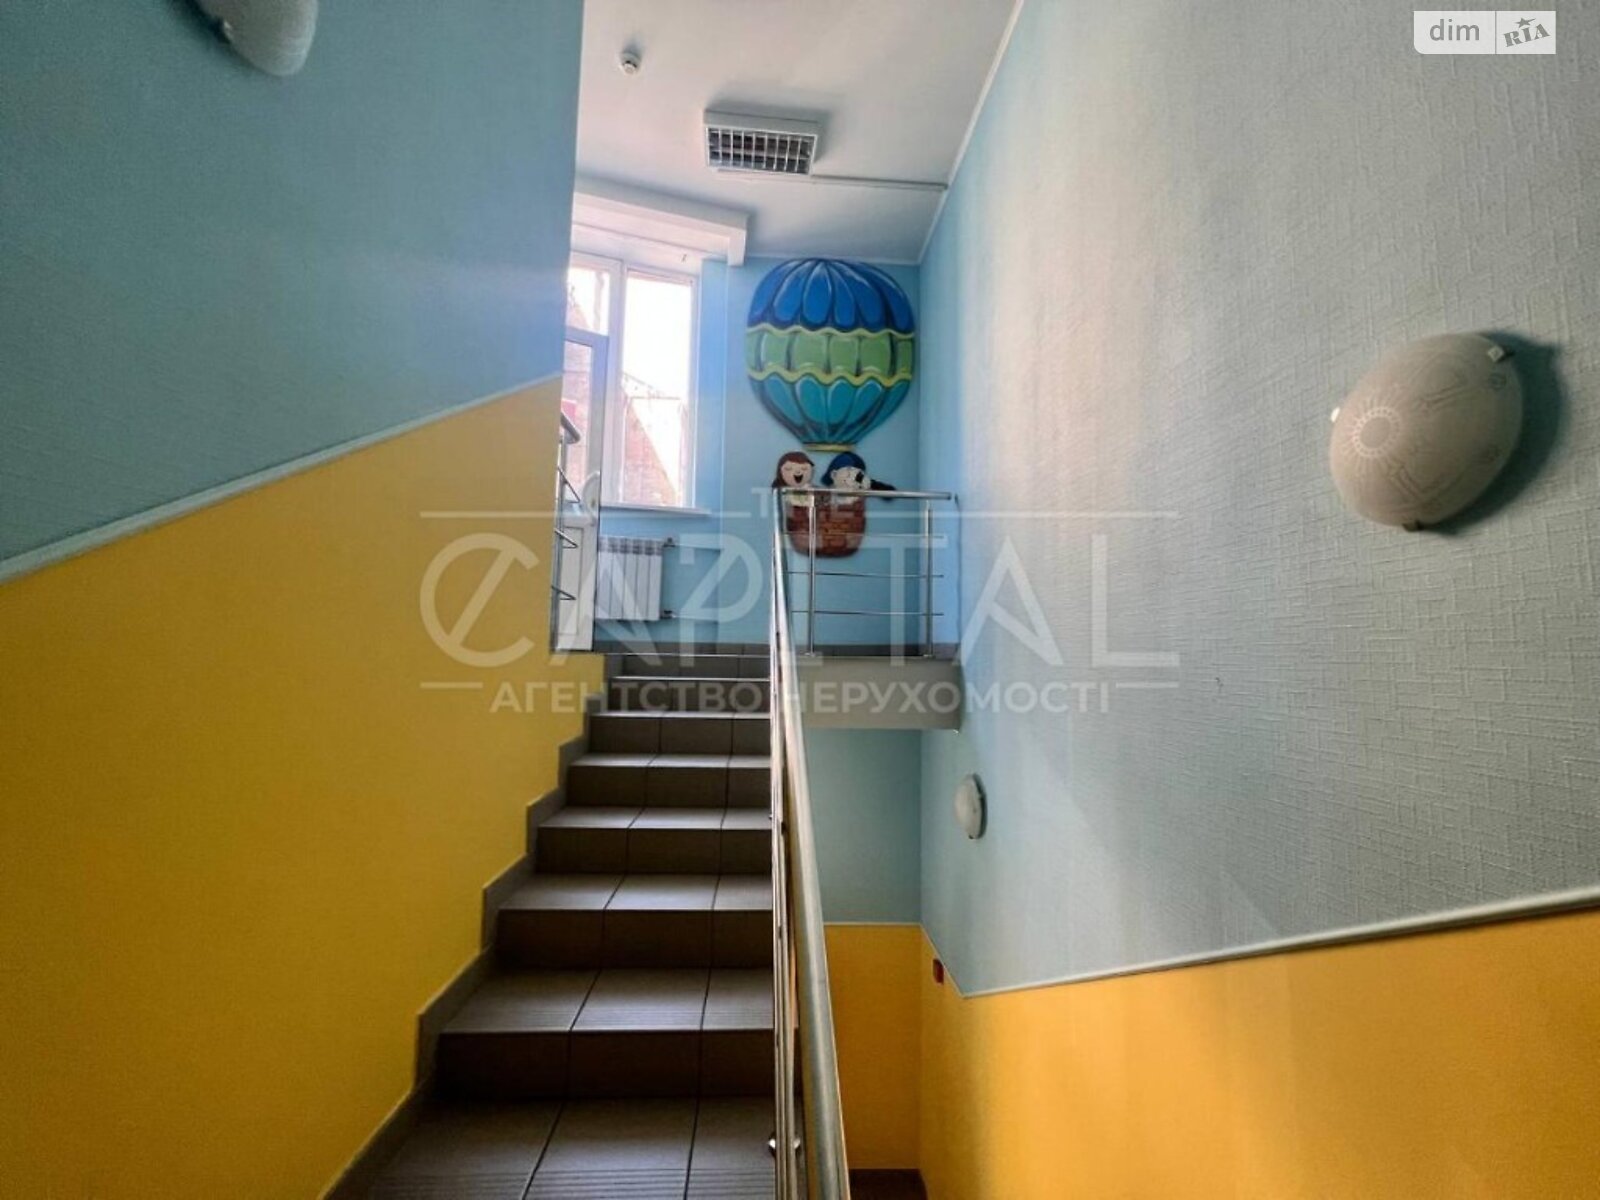 Аренда офисного помещения в Киеве, Виктора Забилы улица 5, помещений - 2, этаж - 2 фото 1